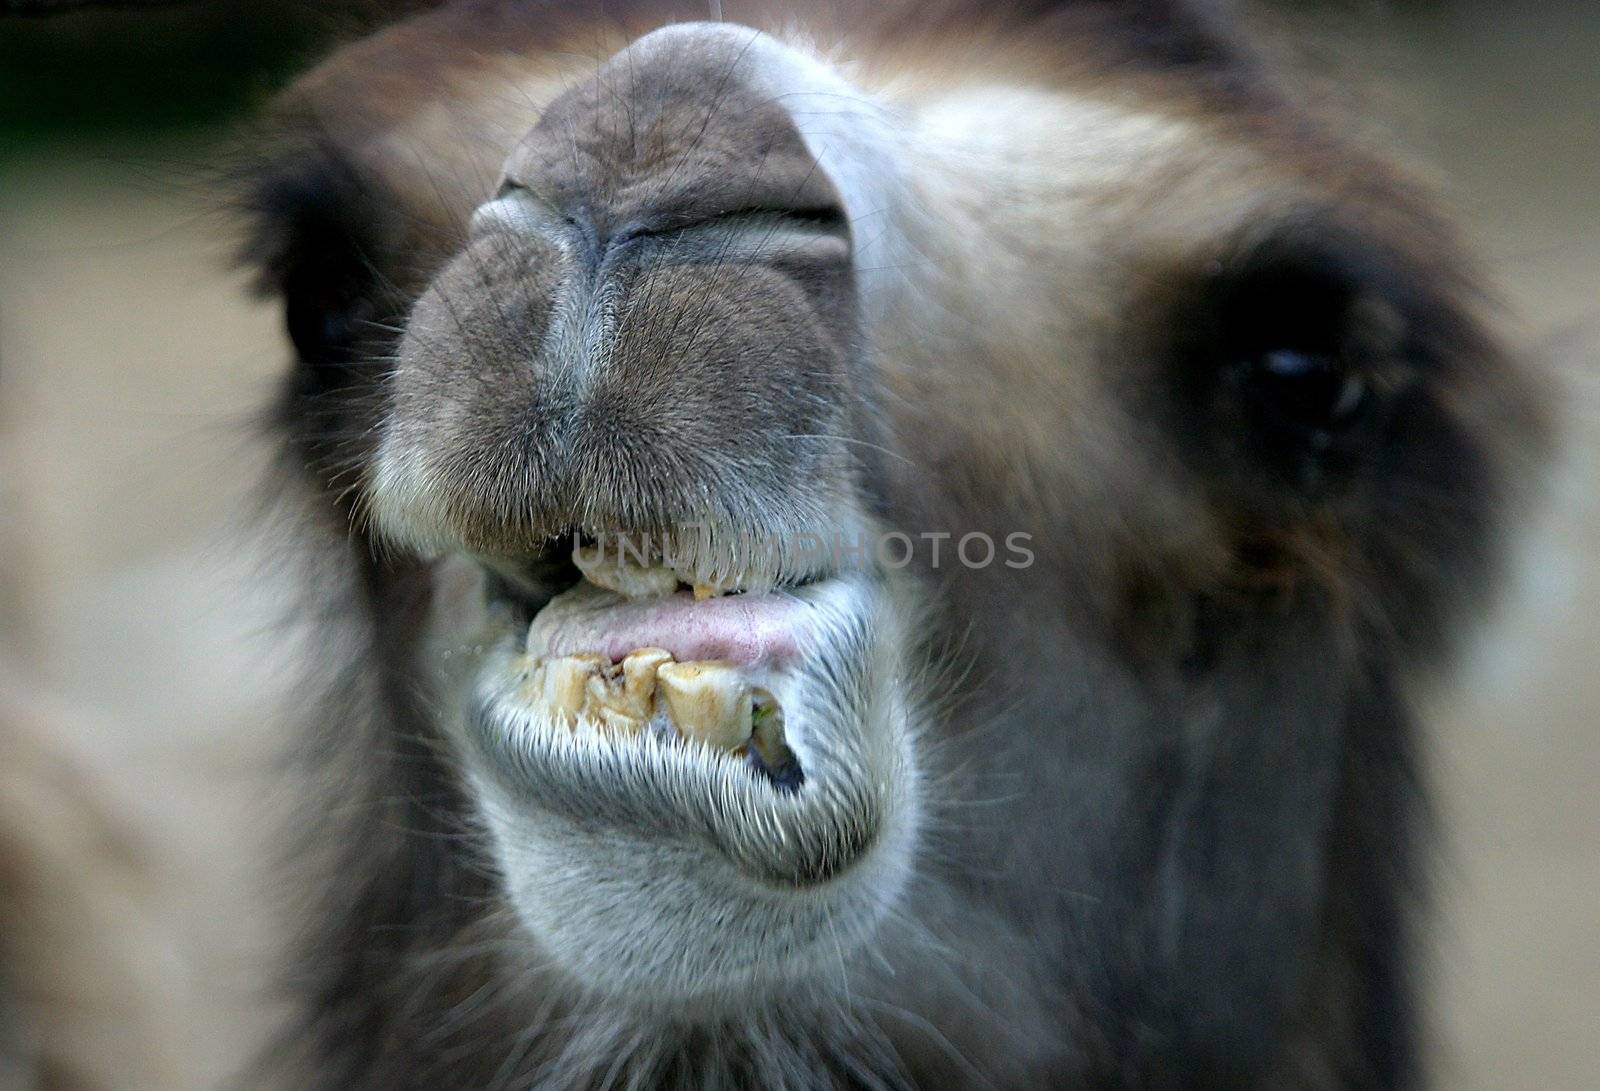 Head of a camel close-up